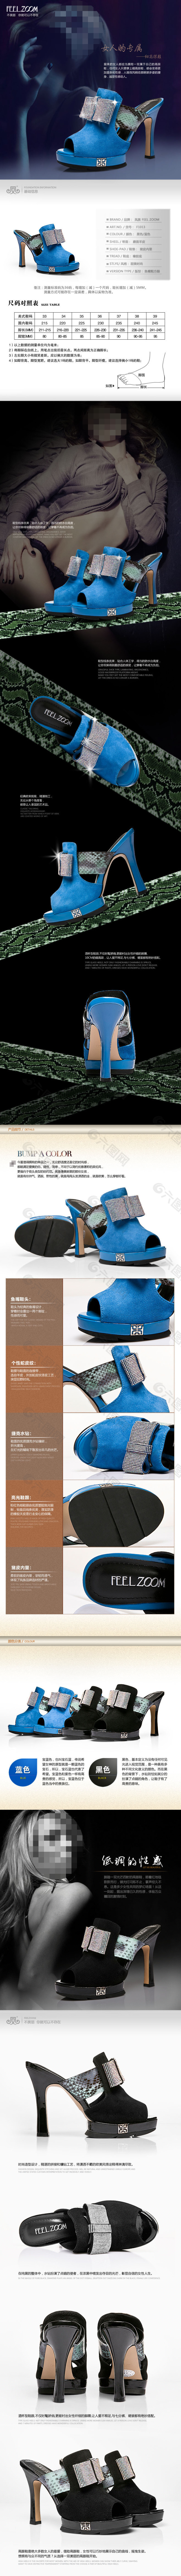 淘宝素材PSD高清分层描述模板女鞋模板